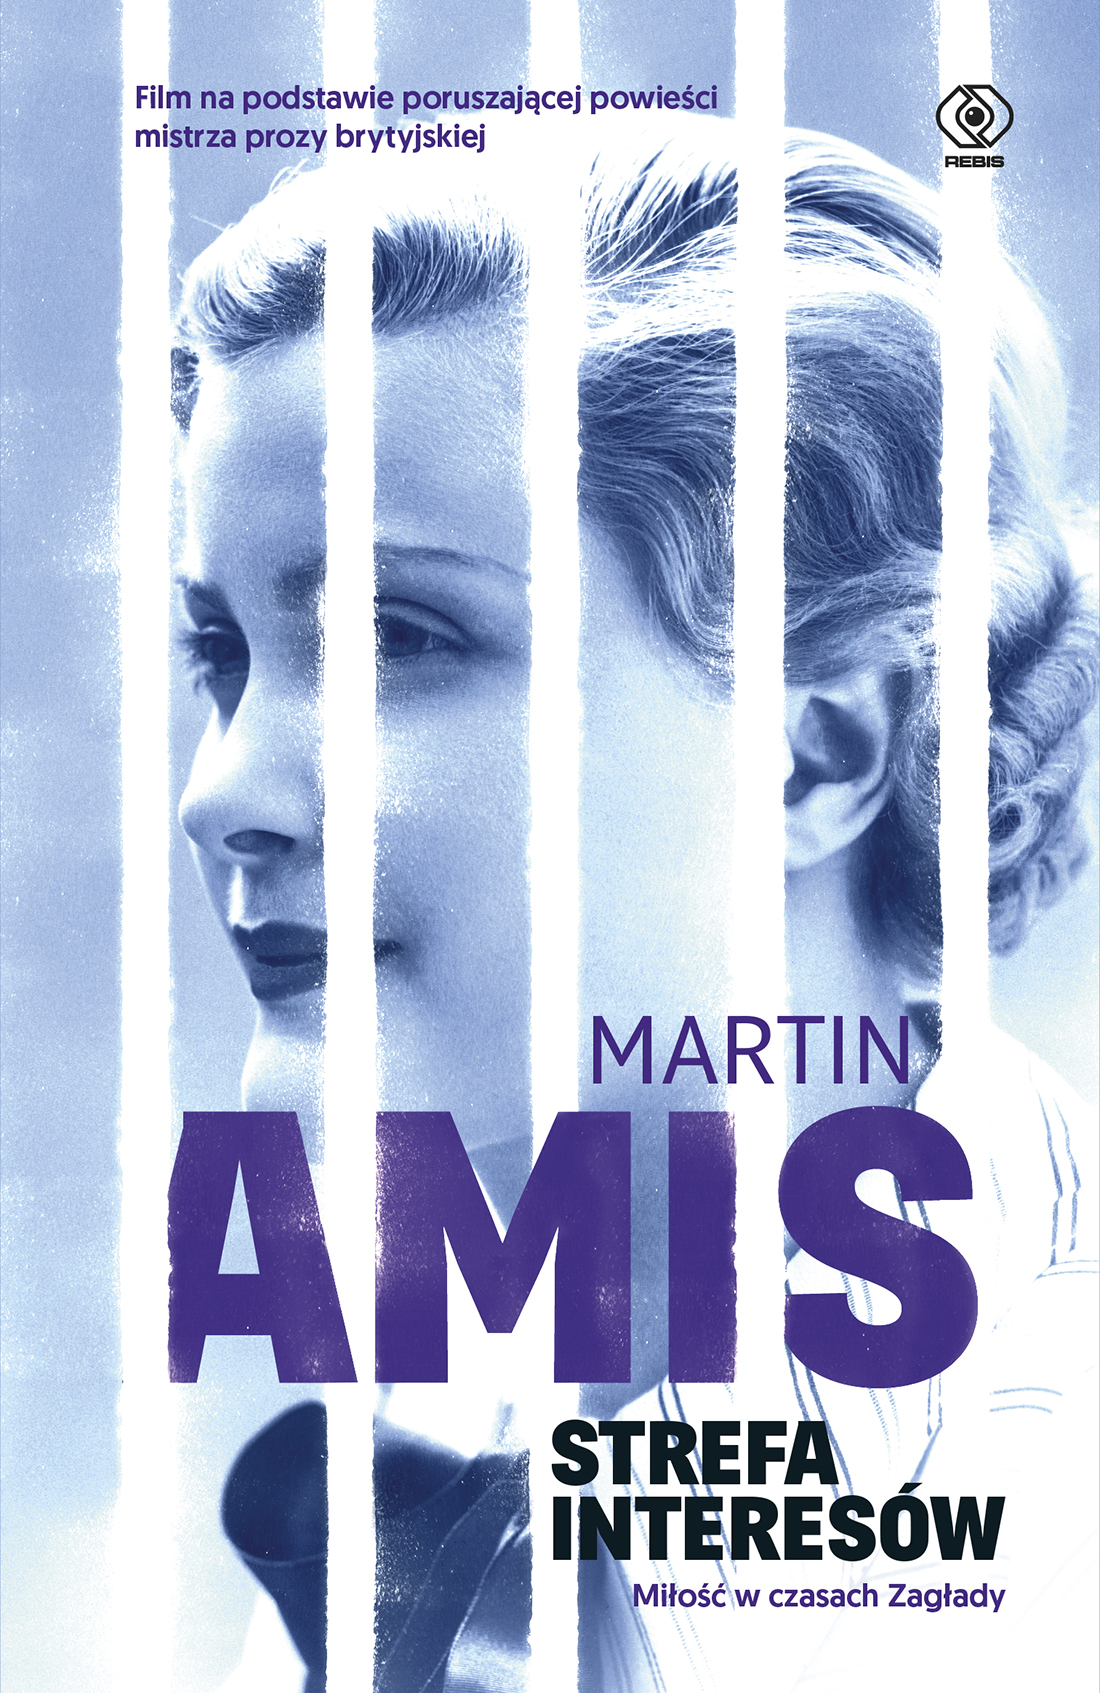 "Strefa interesów", Martin Amis - 27.02 na rynku, film na podstawie powieści 8 marca w kinach!